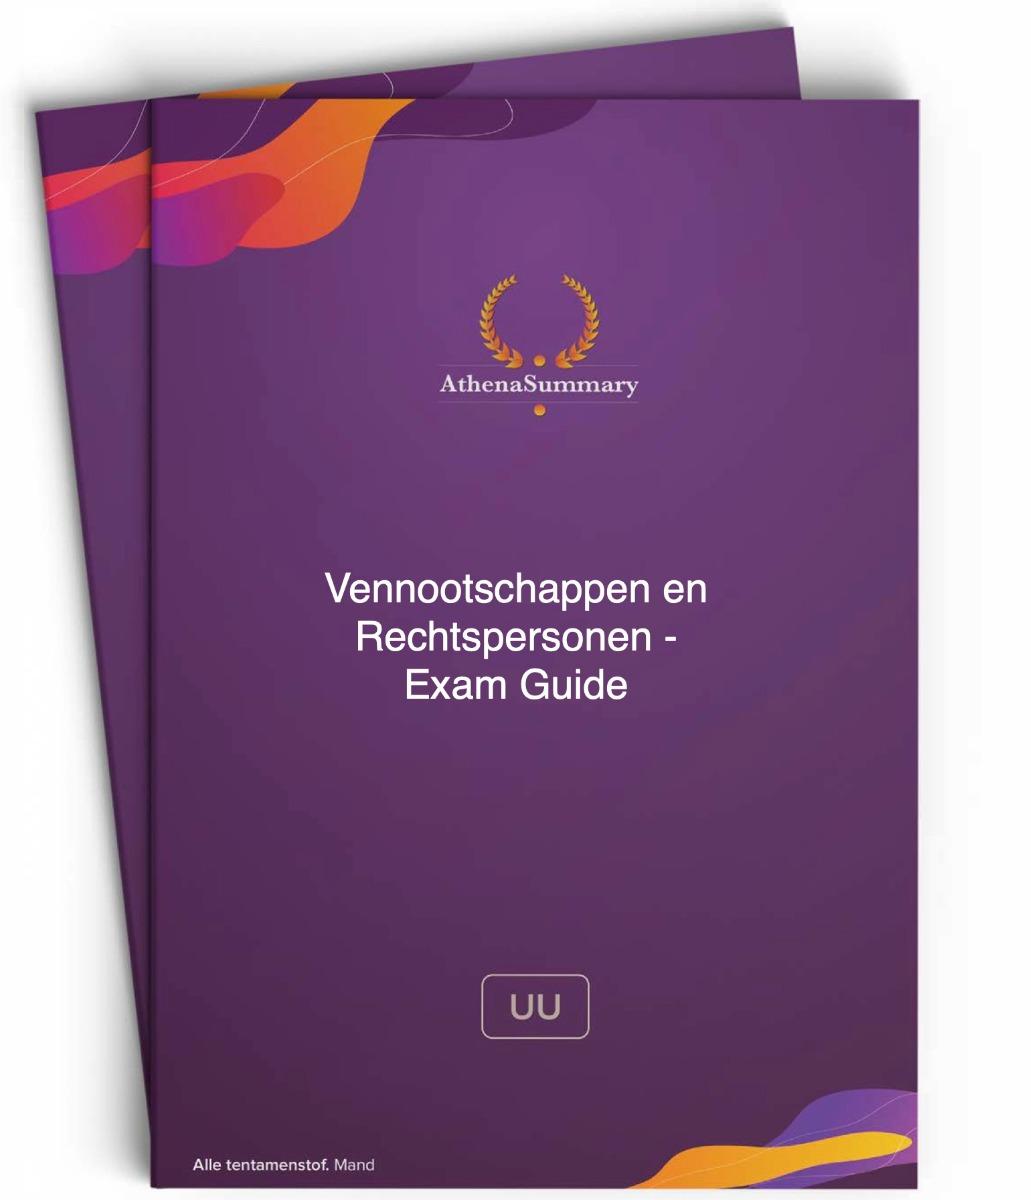 Exam Guide - Vennootschappen en Rechtspersonen